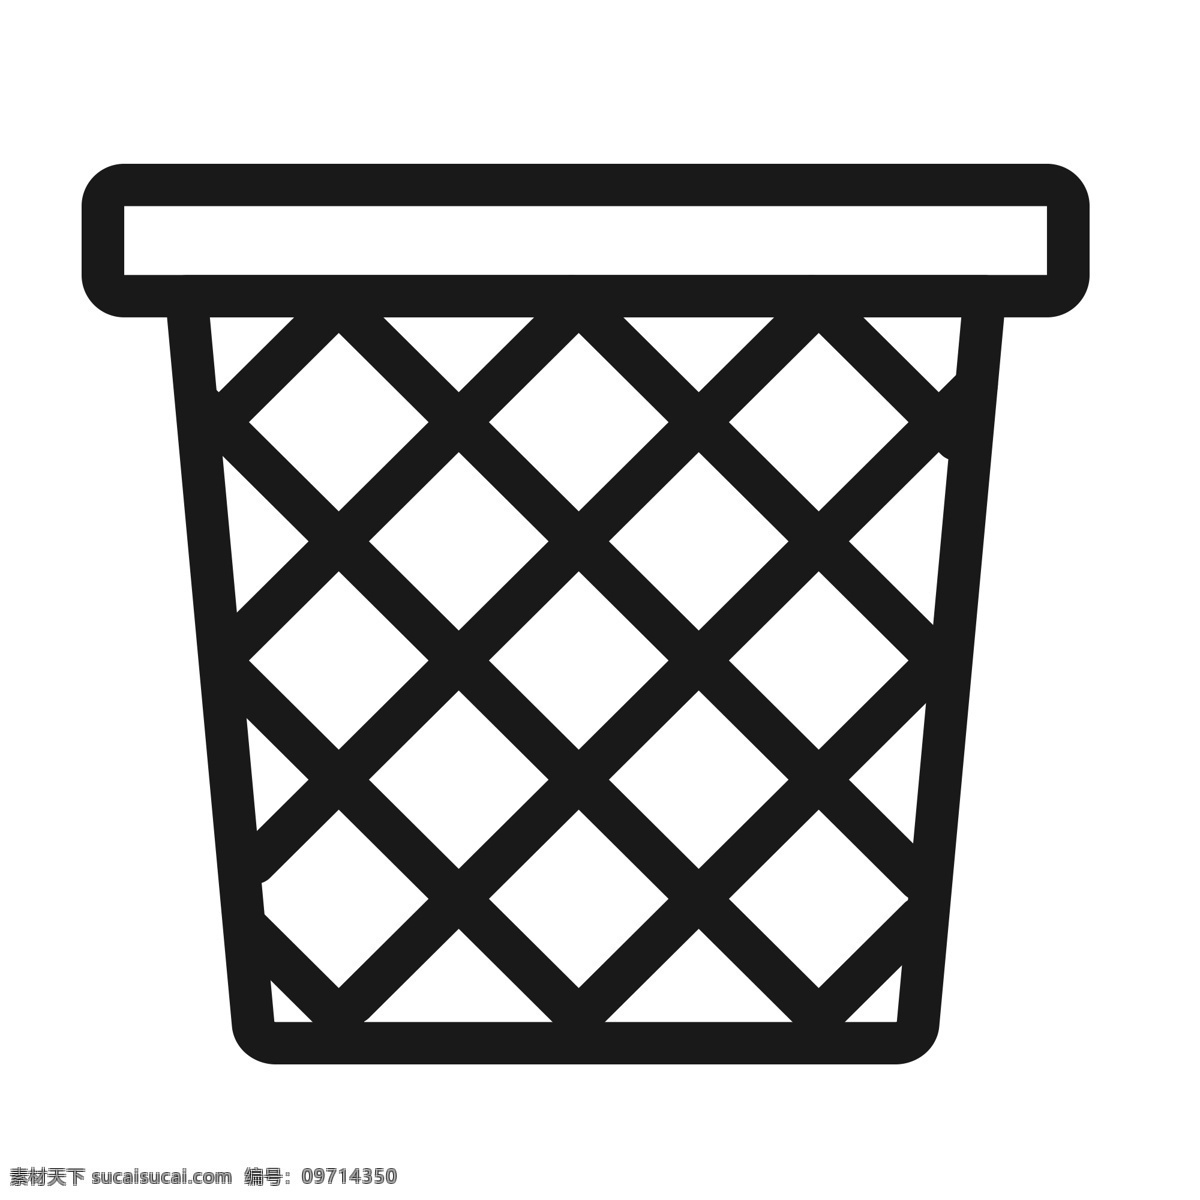 扁平化垃圾桶 回收站 垃圾桶 扁平化ui ui图标 手机图标 界面ui 网页ui h5图标